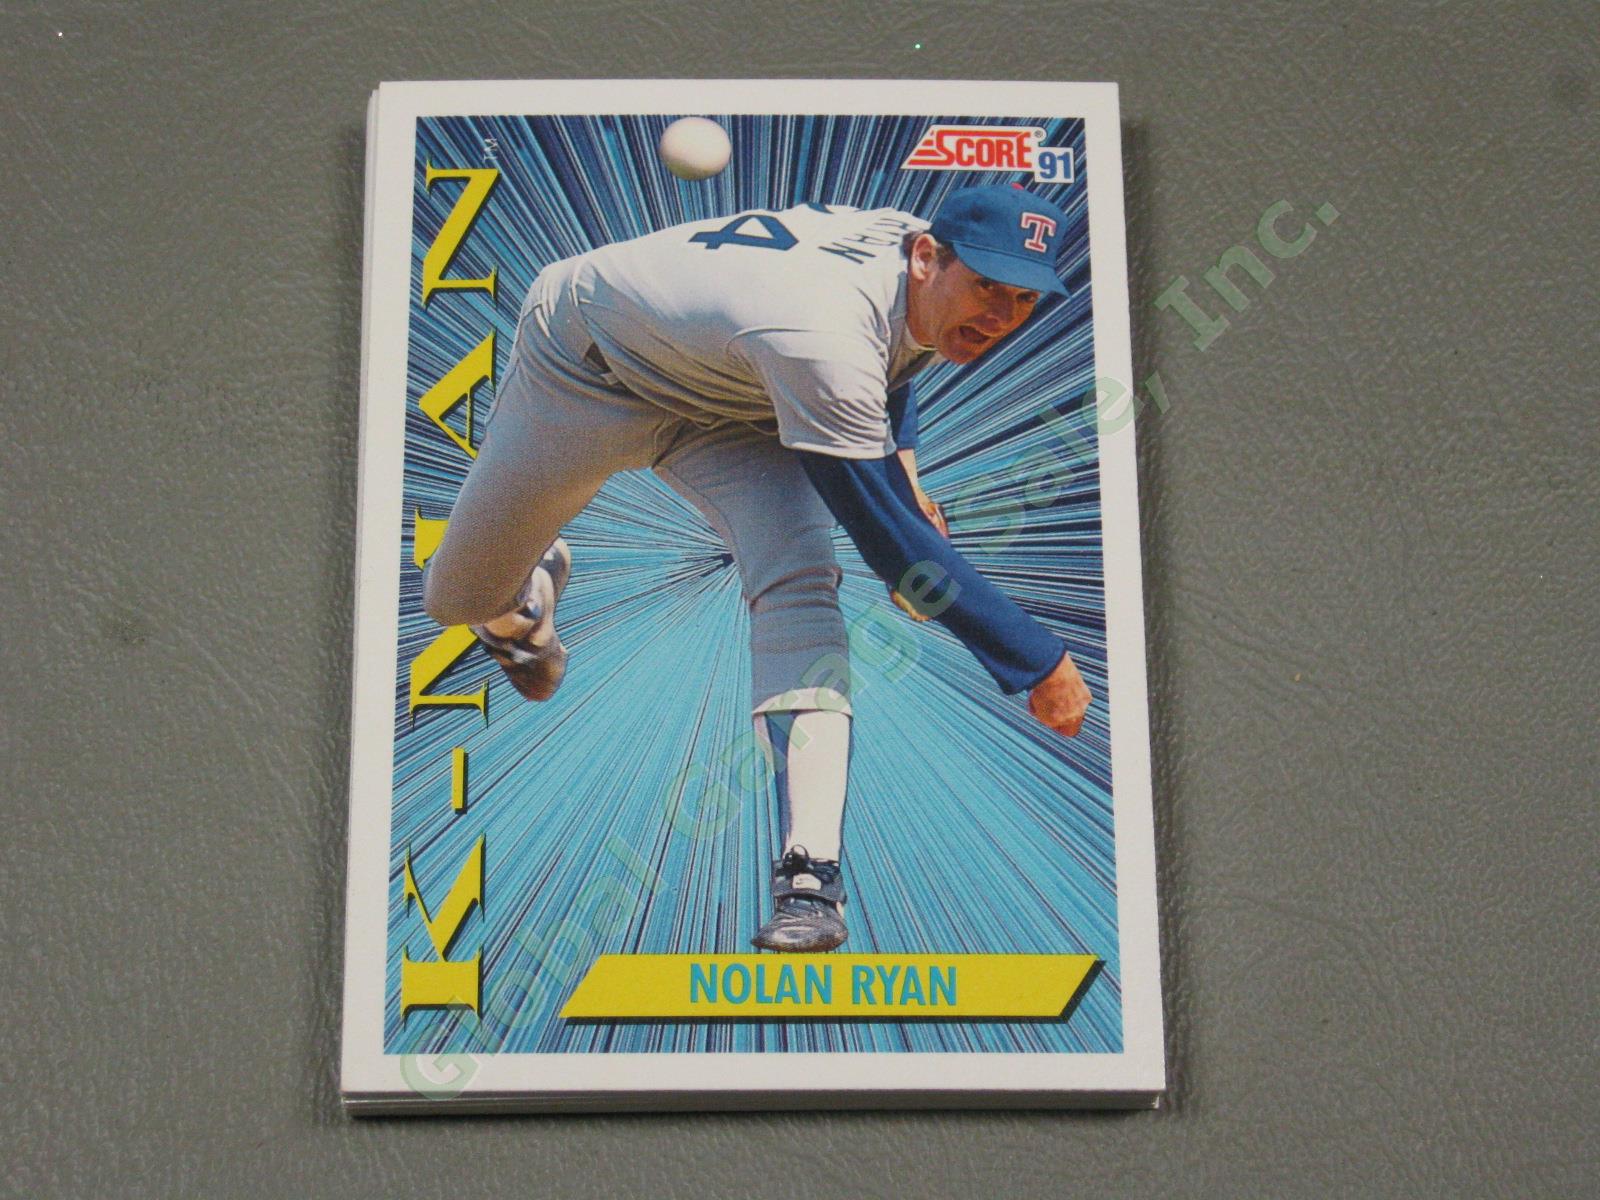 HUGE 3650+/- Vtg Nolan Ryan Baseball Card Lot 1984-1991 Topps Upper Deck #1 ++NR 12